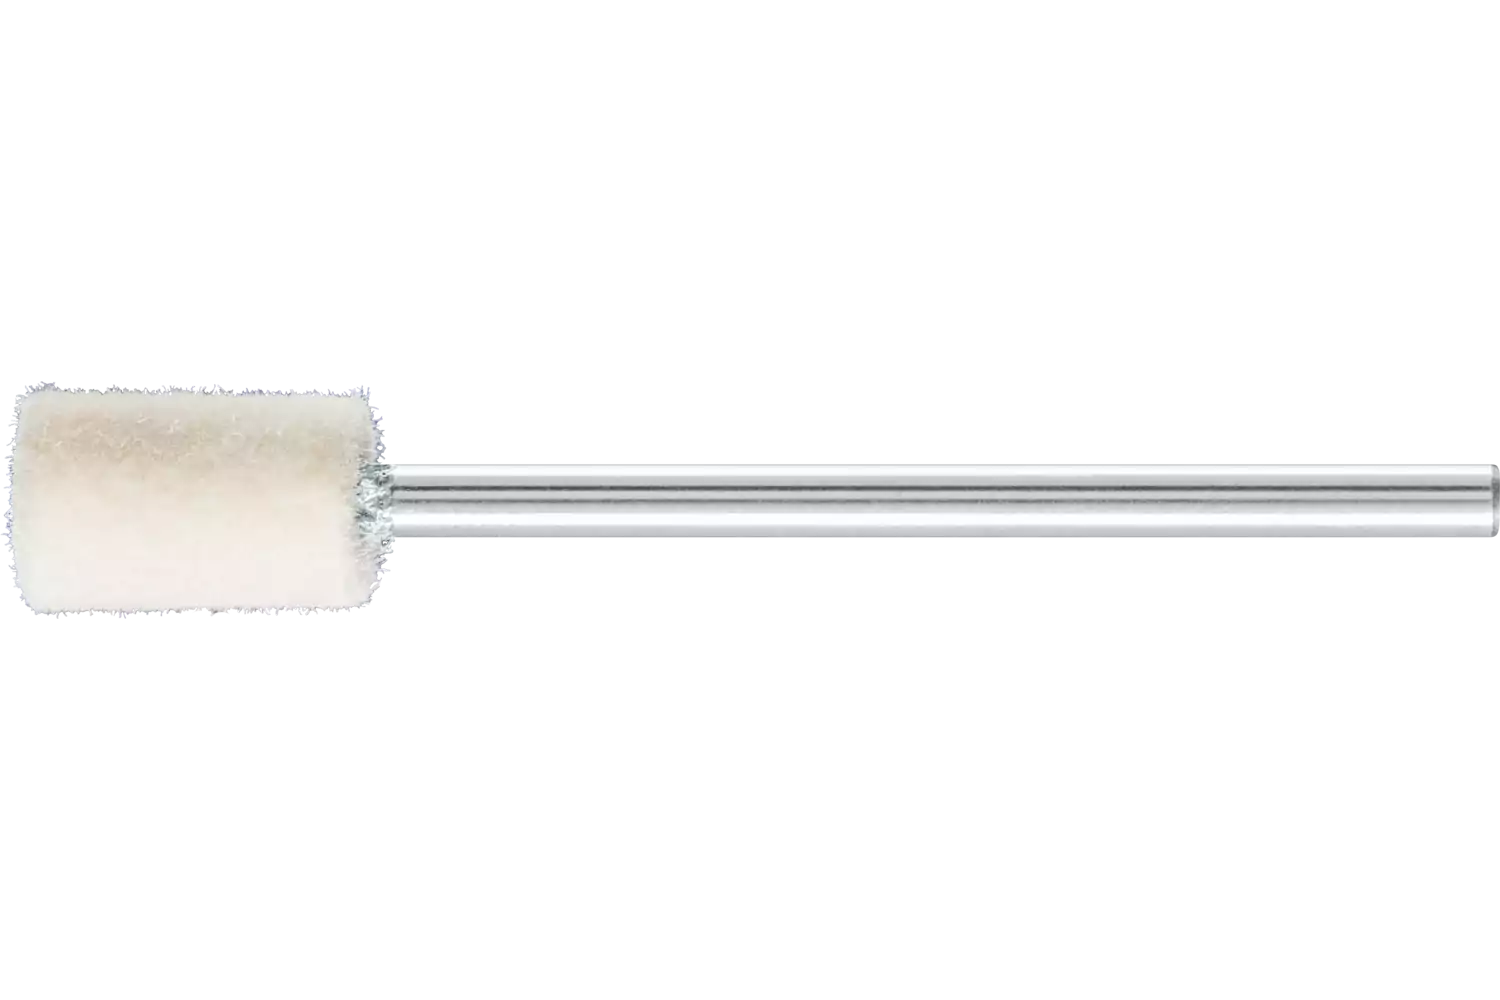 Feltri con gambo per lucidare duri forma cilindrica Ø 6x10 mm, gambo Ø 2,35 mm 1